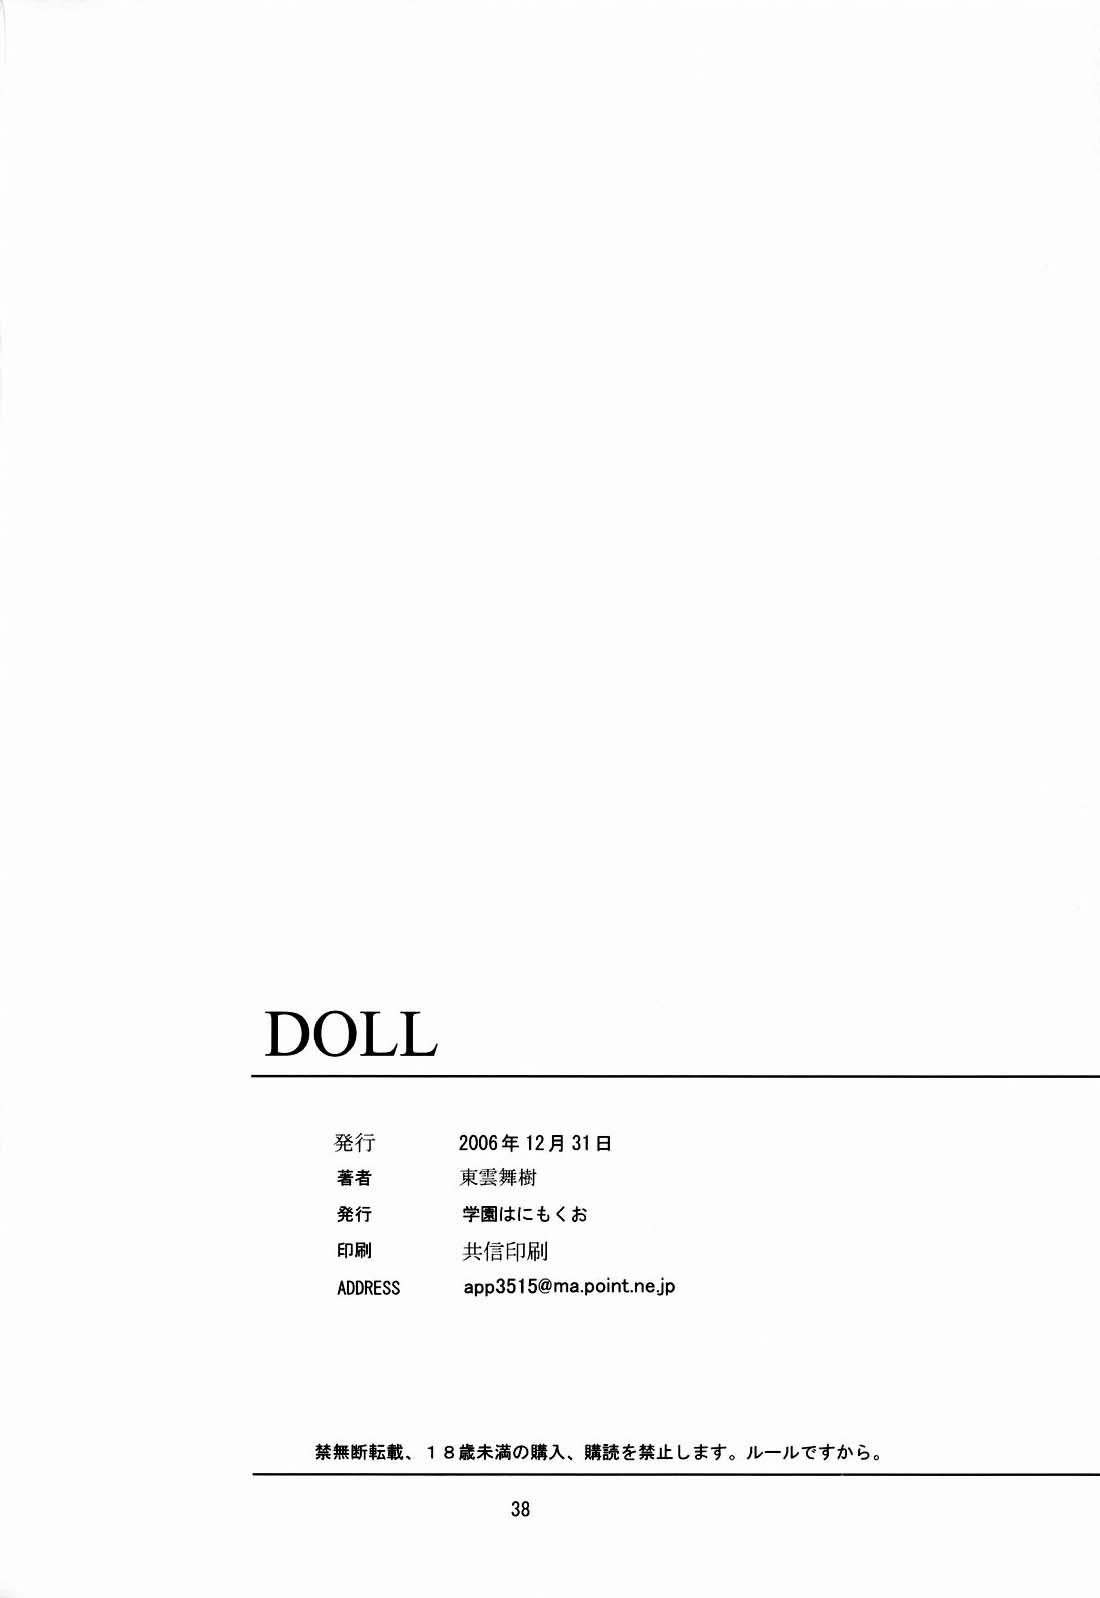 Doll 36